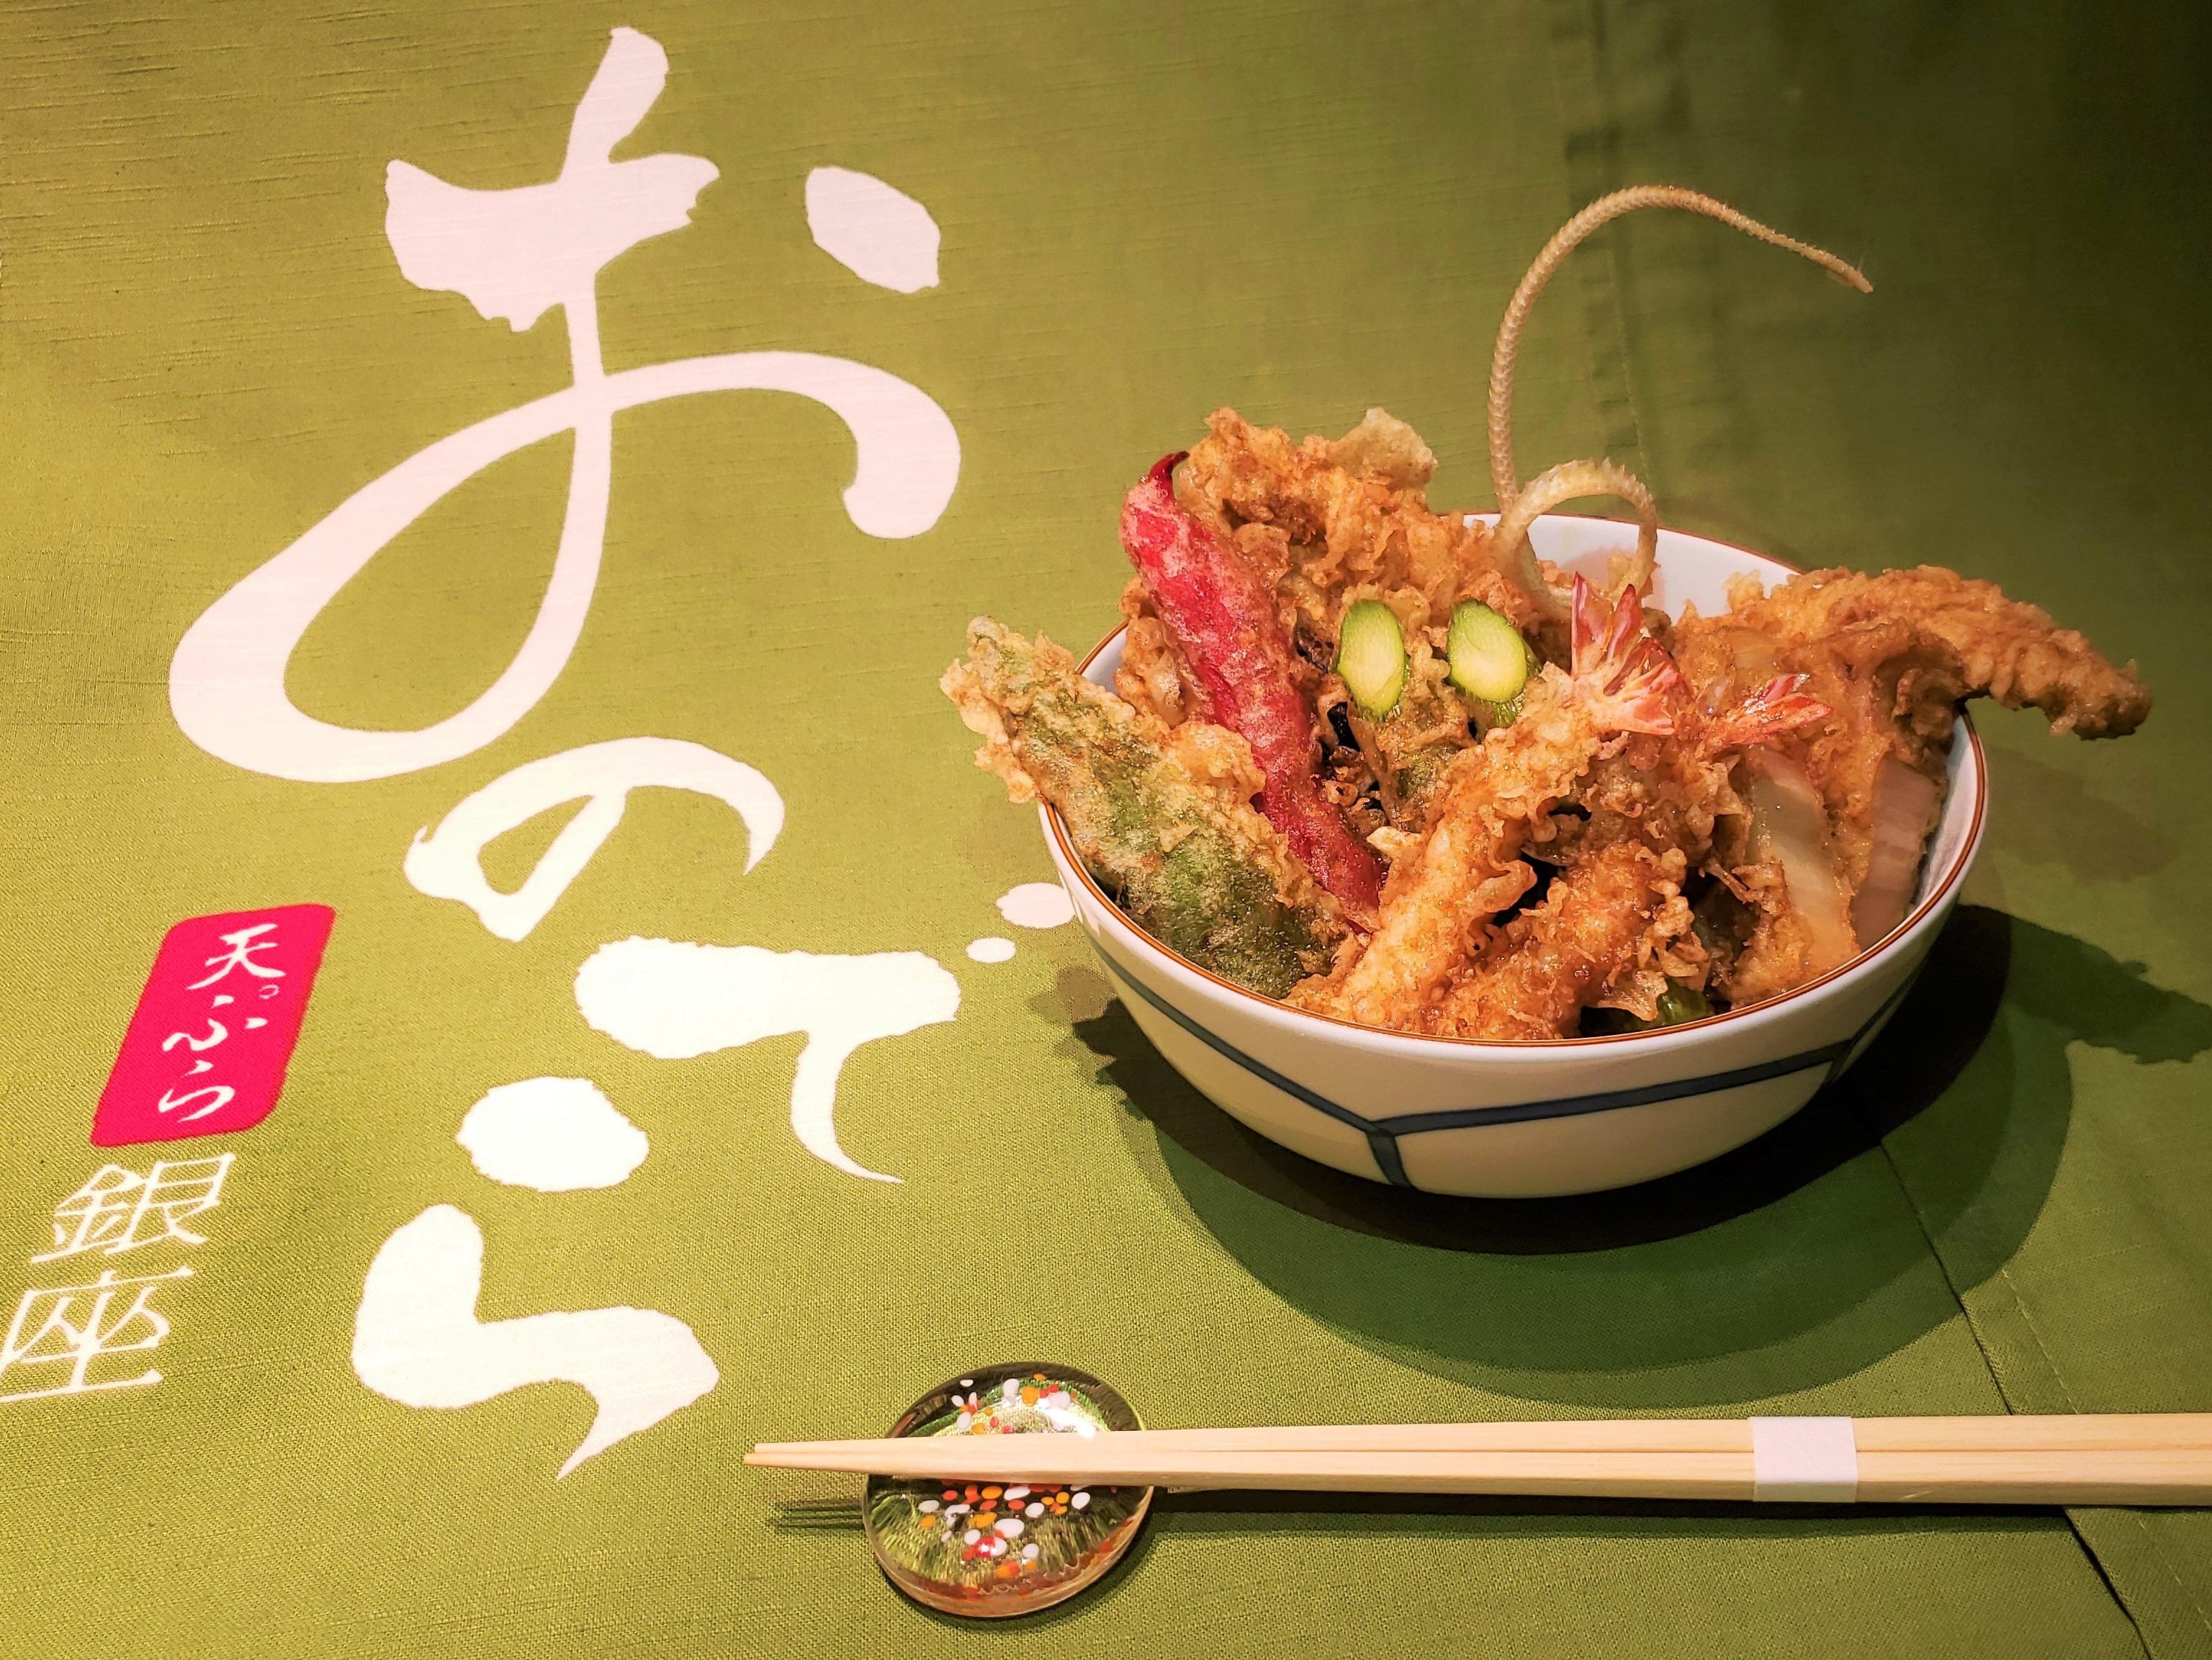 「天ぷら 銀座おのでら」並木通り店、最高級の天ぷらを オーダーメイドで選べる「あなたの天丼」ランチ開始！